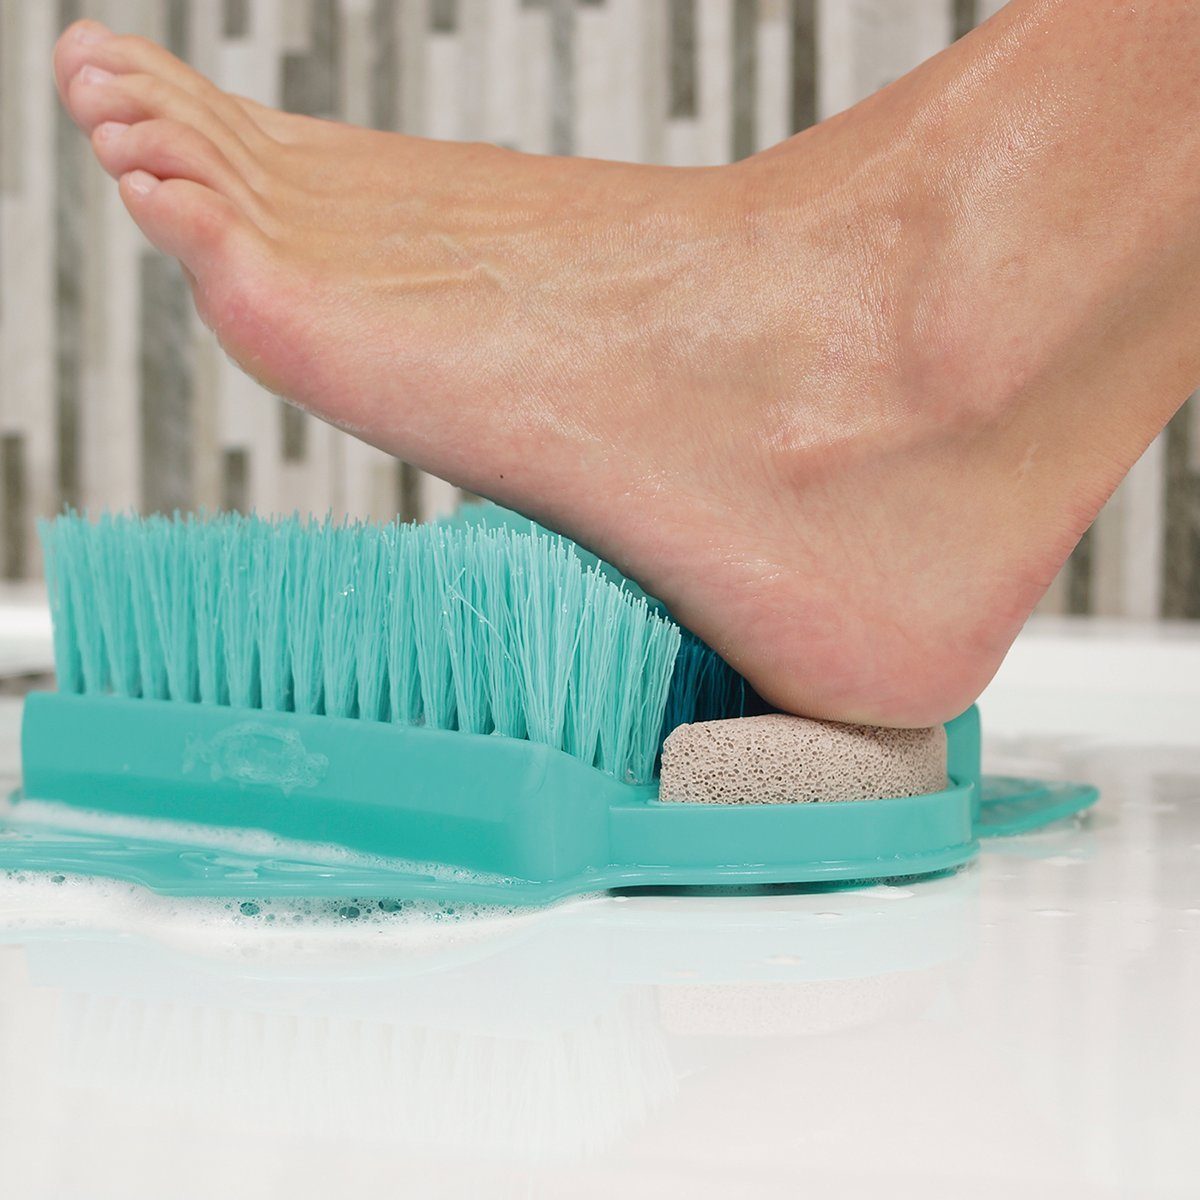 Starlyf Fußbürste Foot Fußpflege und mit Bimsstein 2in1 Badewanne für Fußreiniger Dusche 1-tlg., Pad, Spa Fußbürste